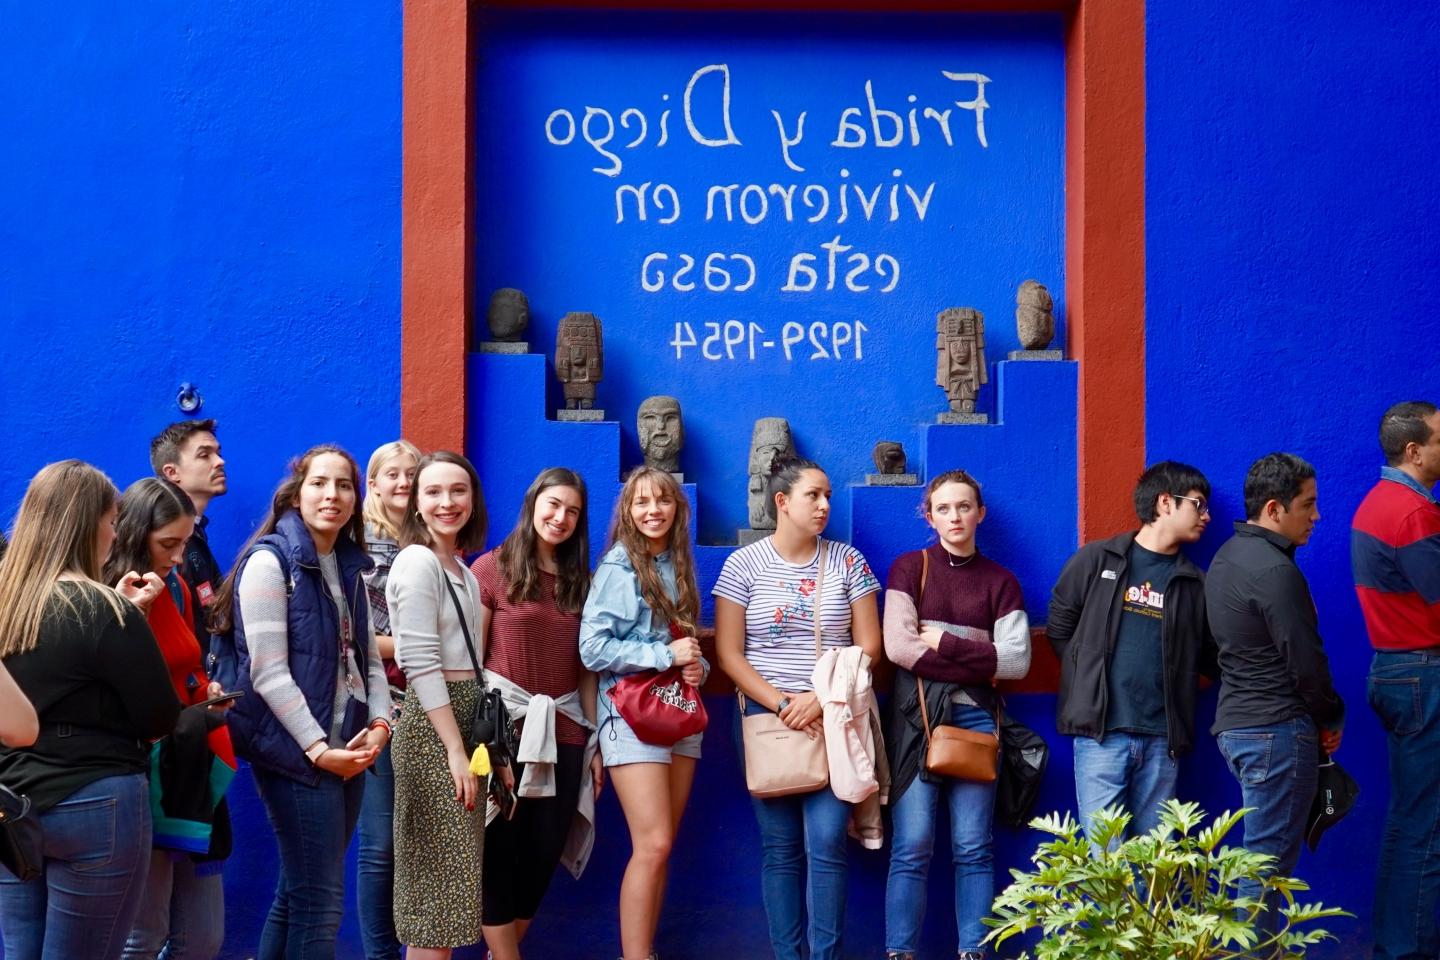 一排澳门金沙线上赌博官网的学生站在一面写着西班牙文的蓝色墙壁前